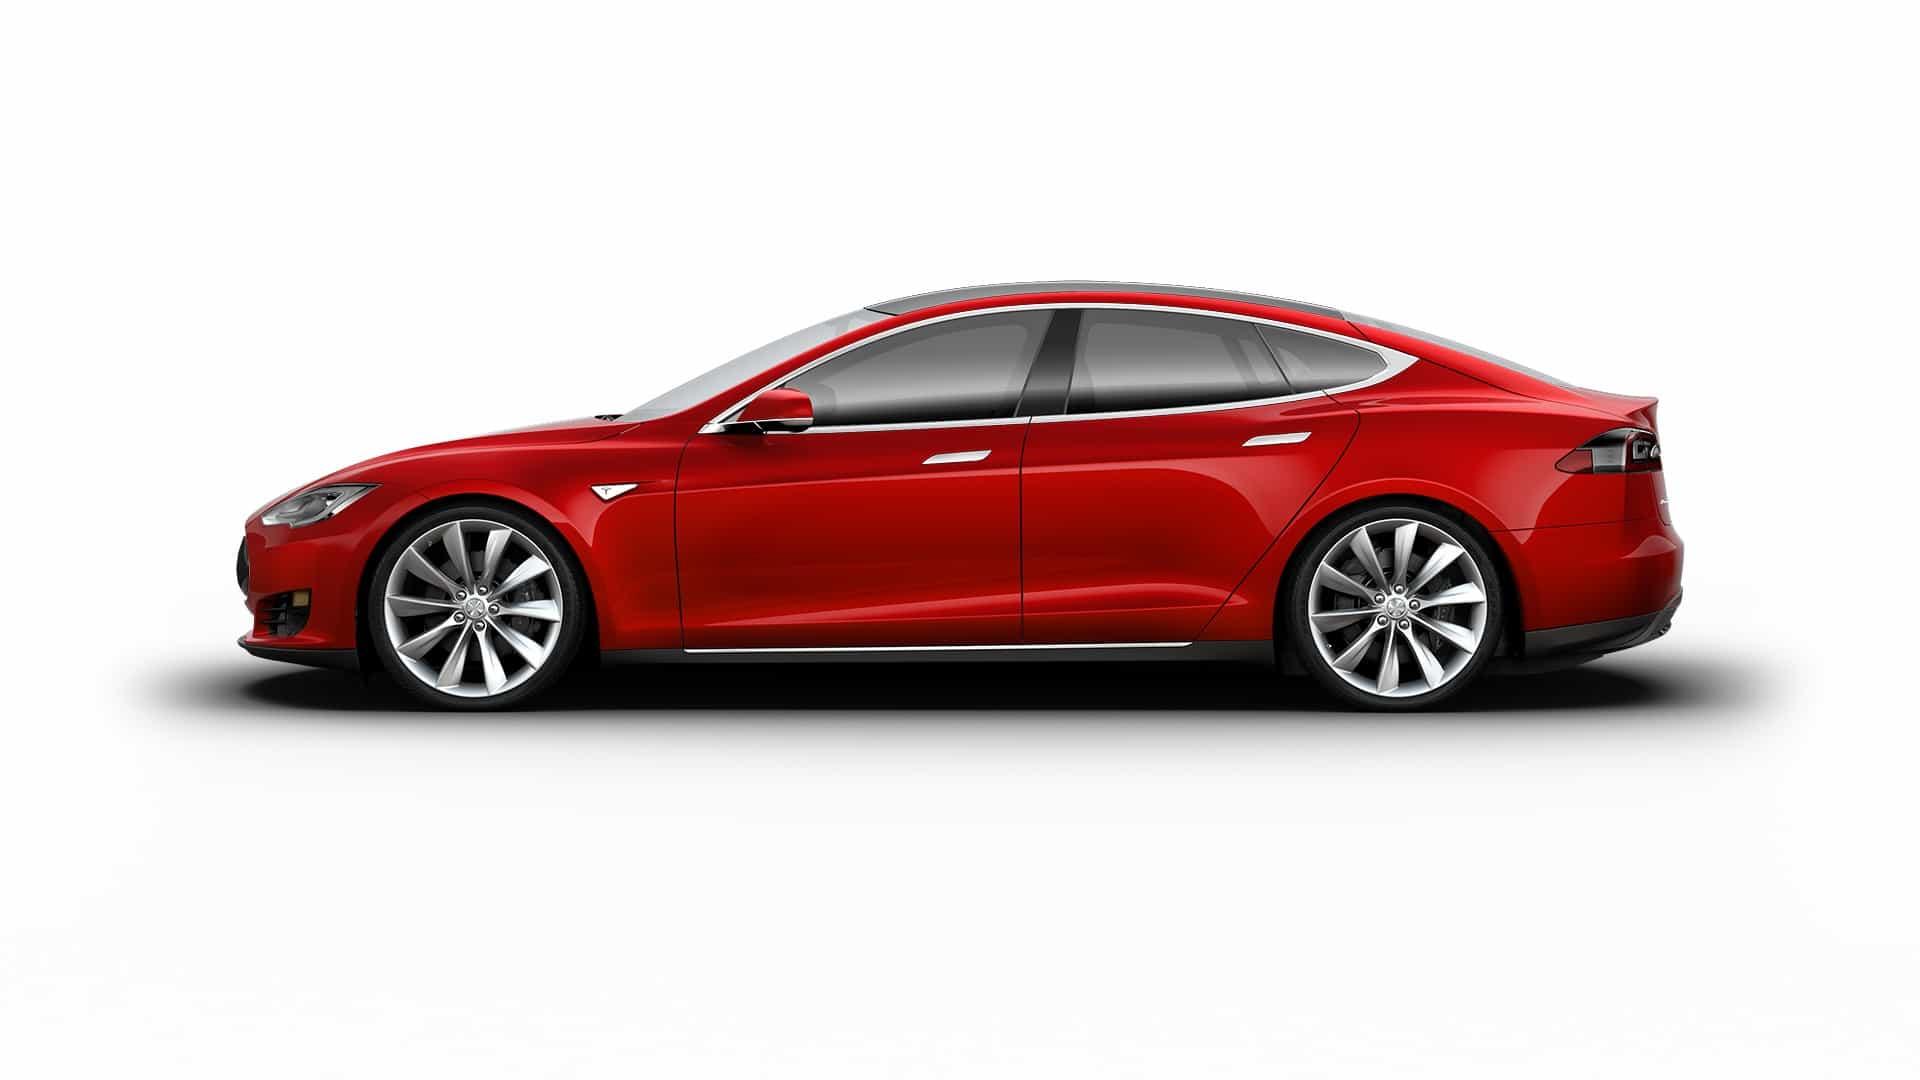 Irrésistibles ! C’est ce que devront être les voitures électriques selon le patron de Tesla Elon Musk